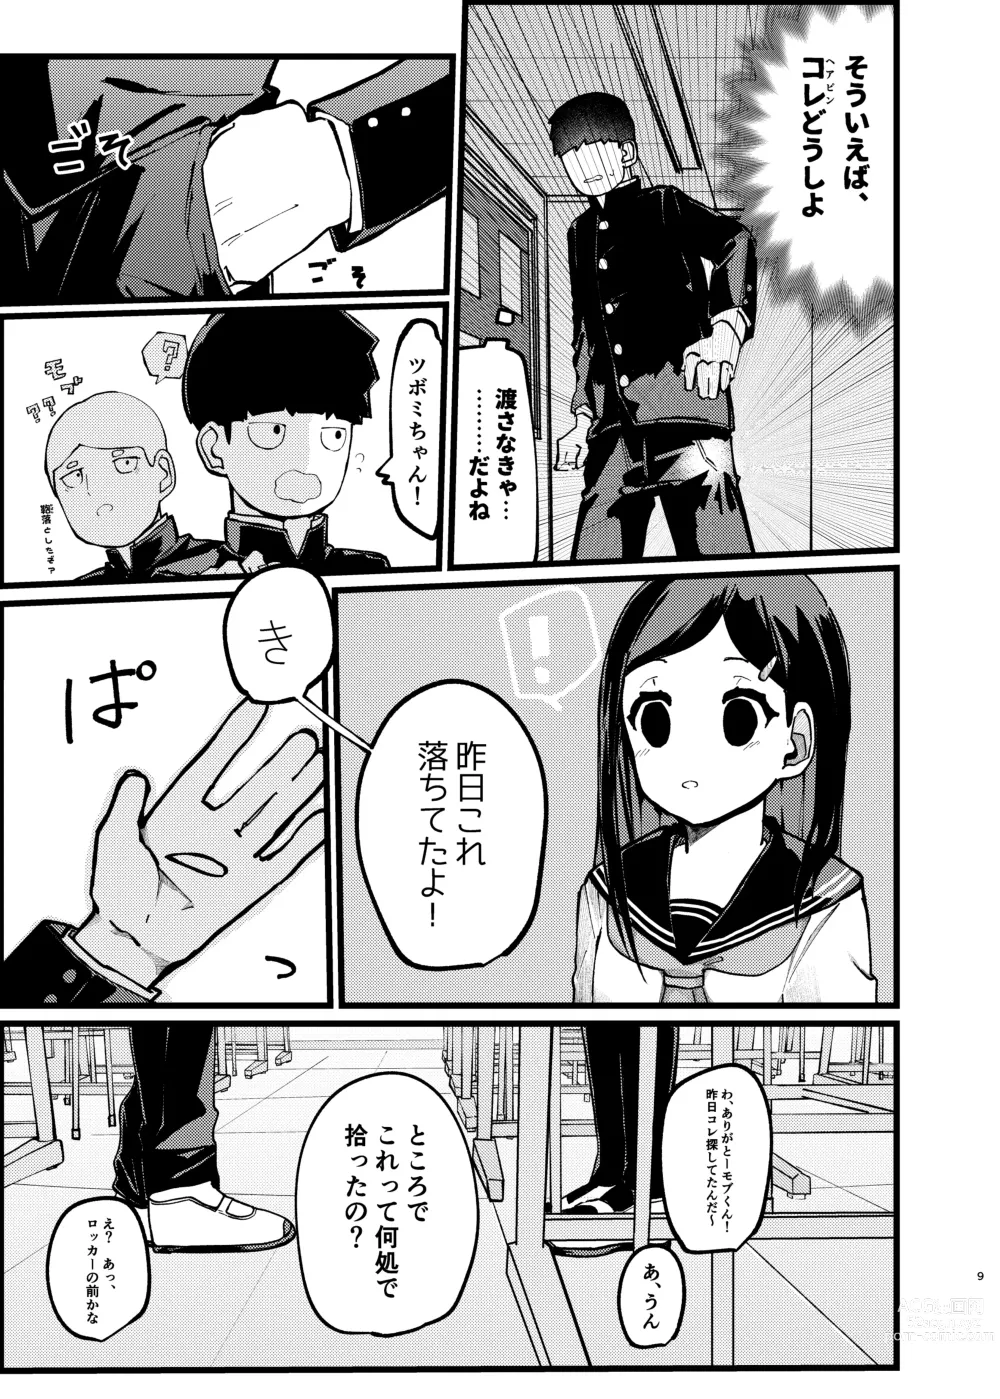 Page 8 of doujinshi Boku ga Saki ni Suki datta noni